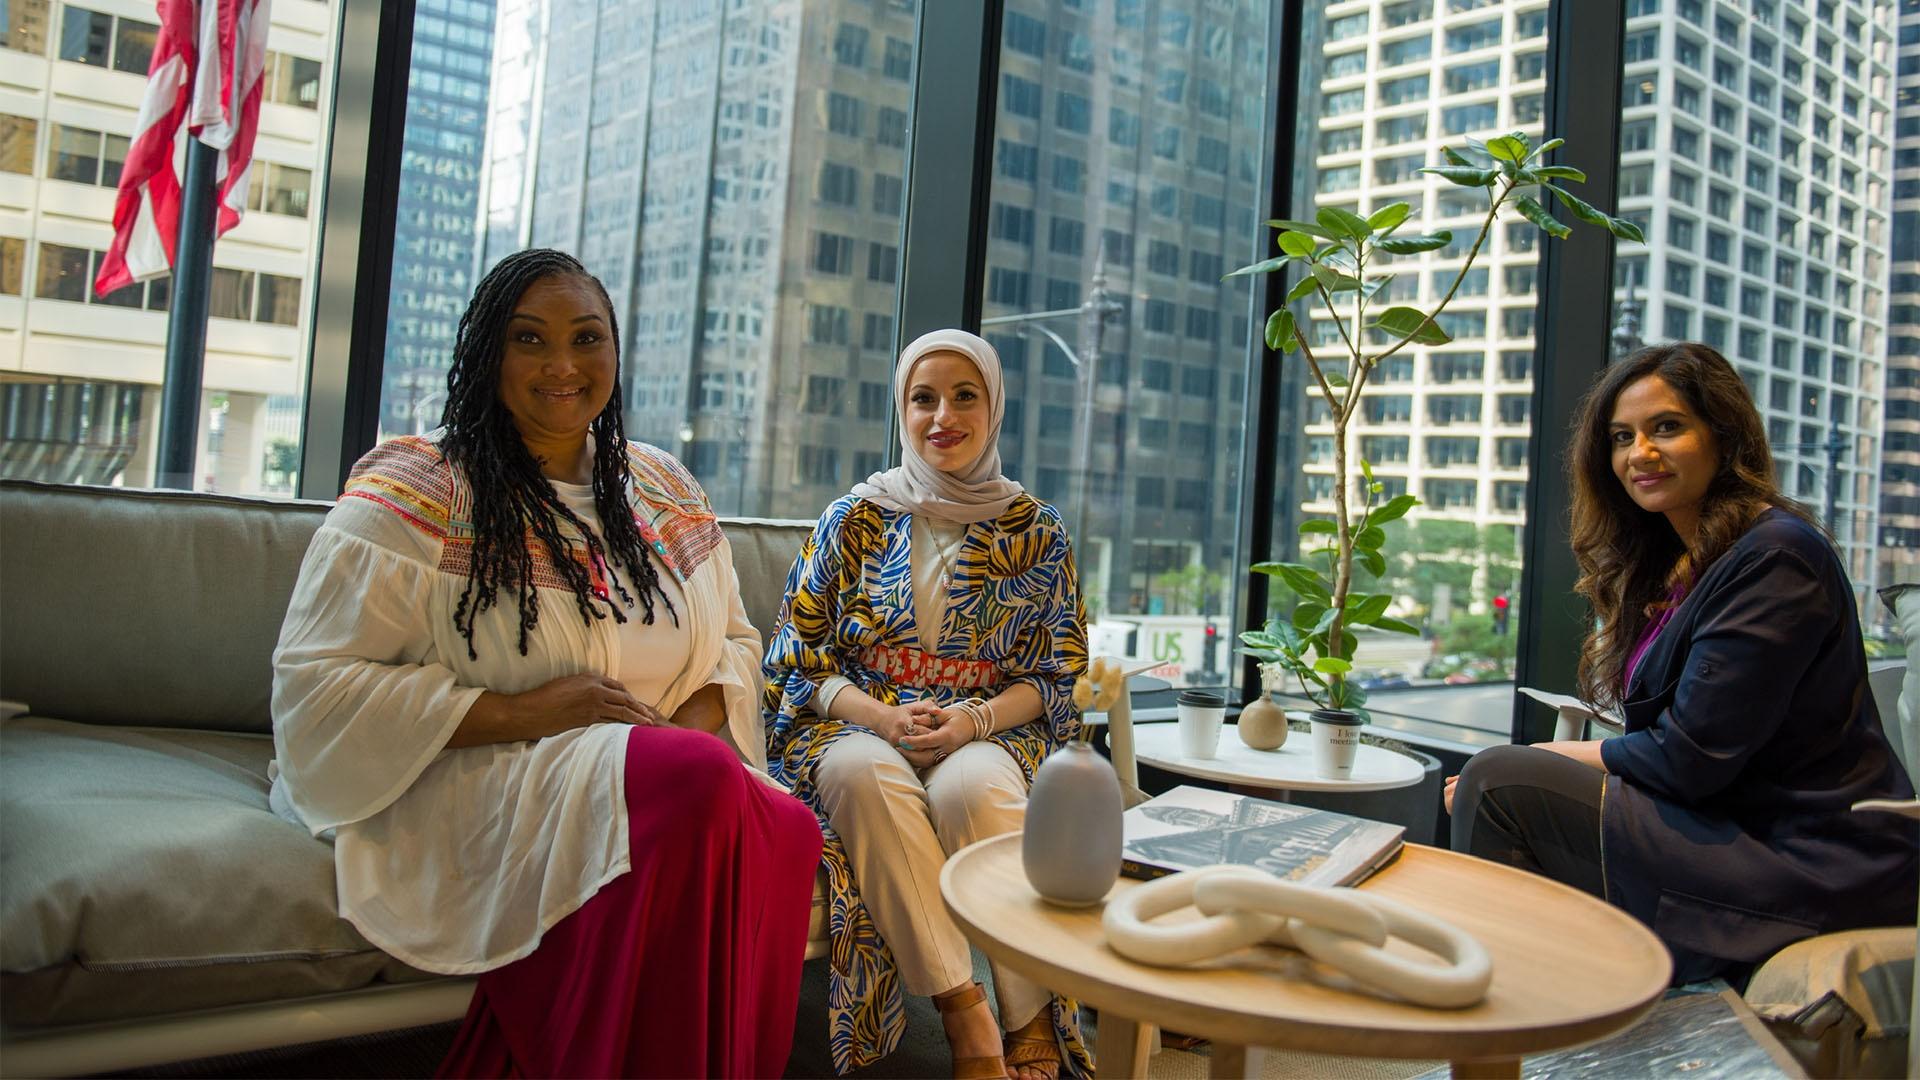 Maryum Ali, Mona Haydar and Maaria Mozaffar sitting together in Chicago.